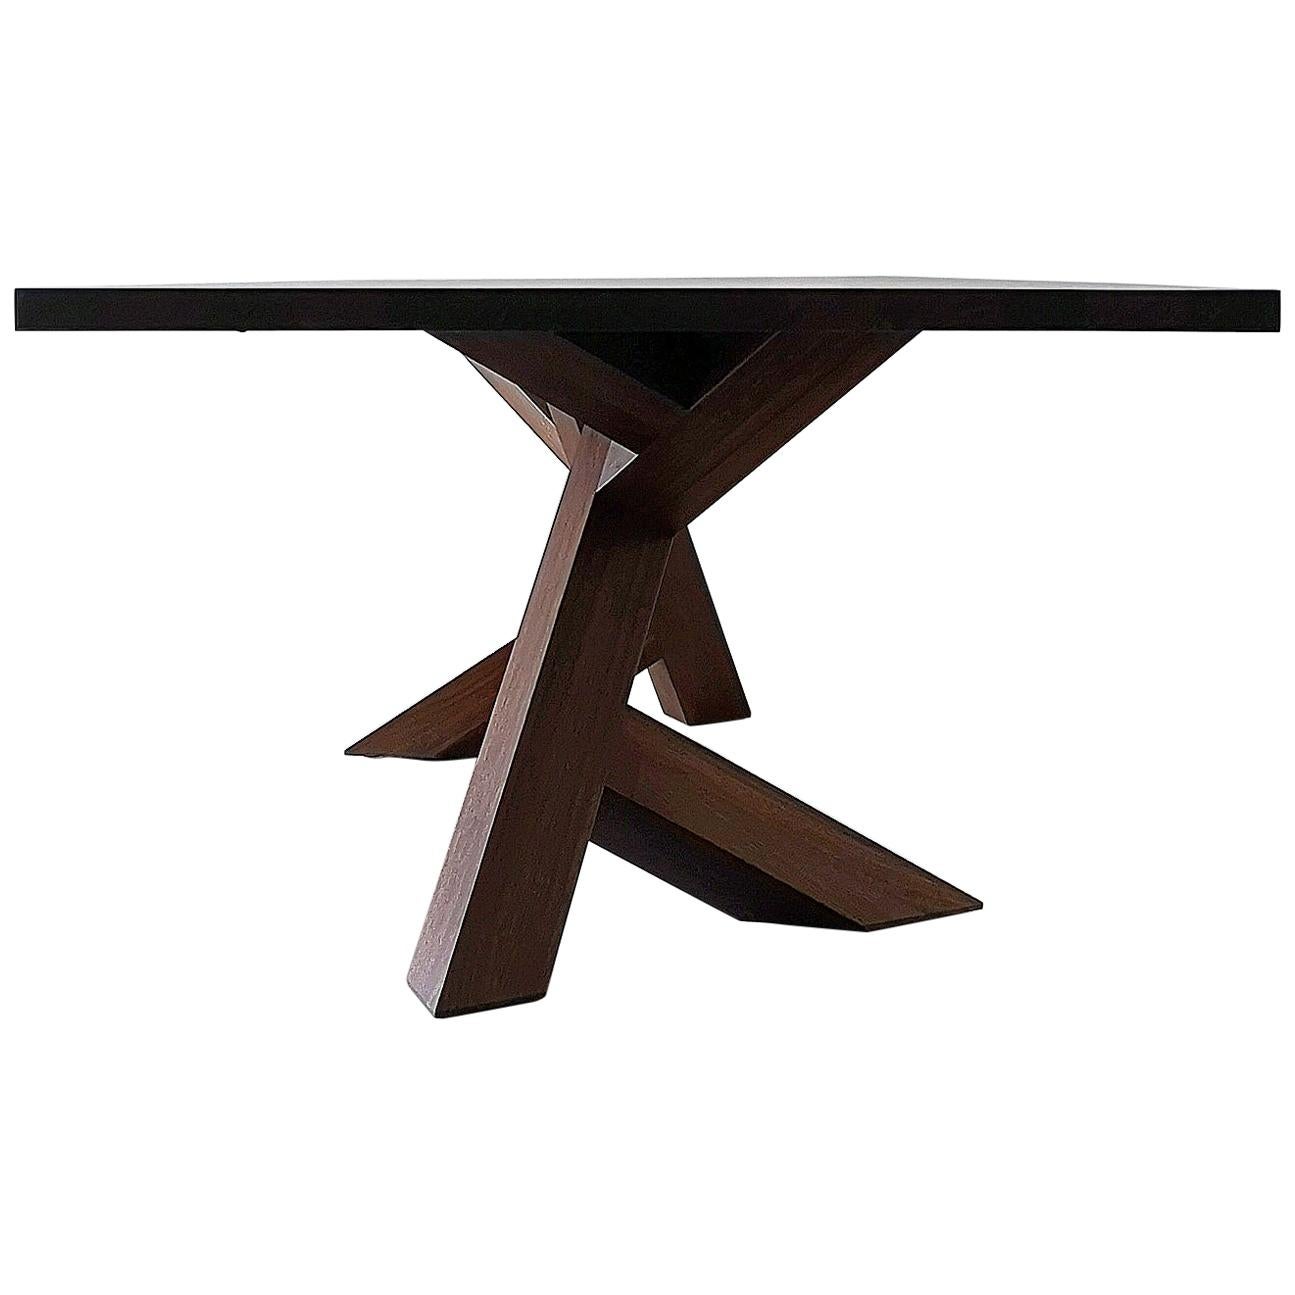 Der Iconoclast Esstisch ist aus 100% massivem Hartholz gefertigt und verfügt über einen einzigartigen Sockel. Dieses Stück zieht die Blicke auf sich und ist der perfekte Mittelpunkt für jedes offene Esszimmer, ob modern oder im Übergangsstil, und